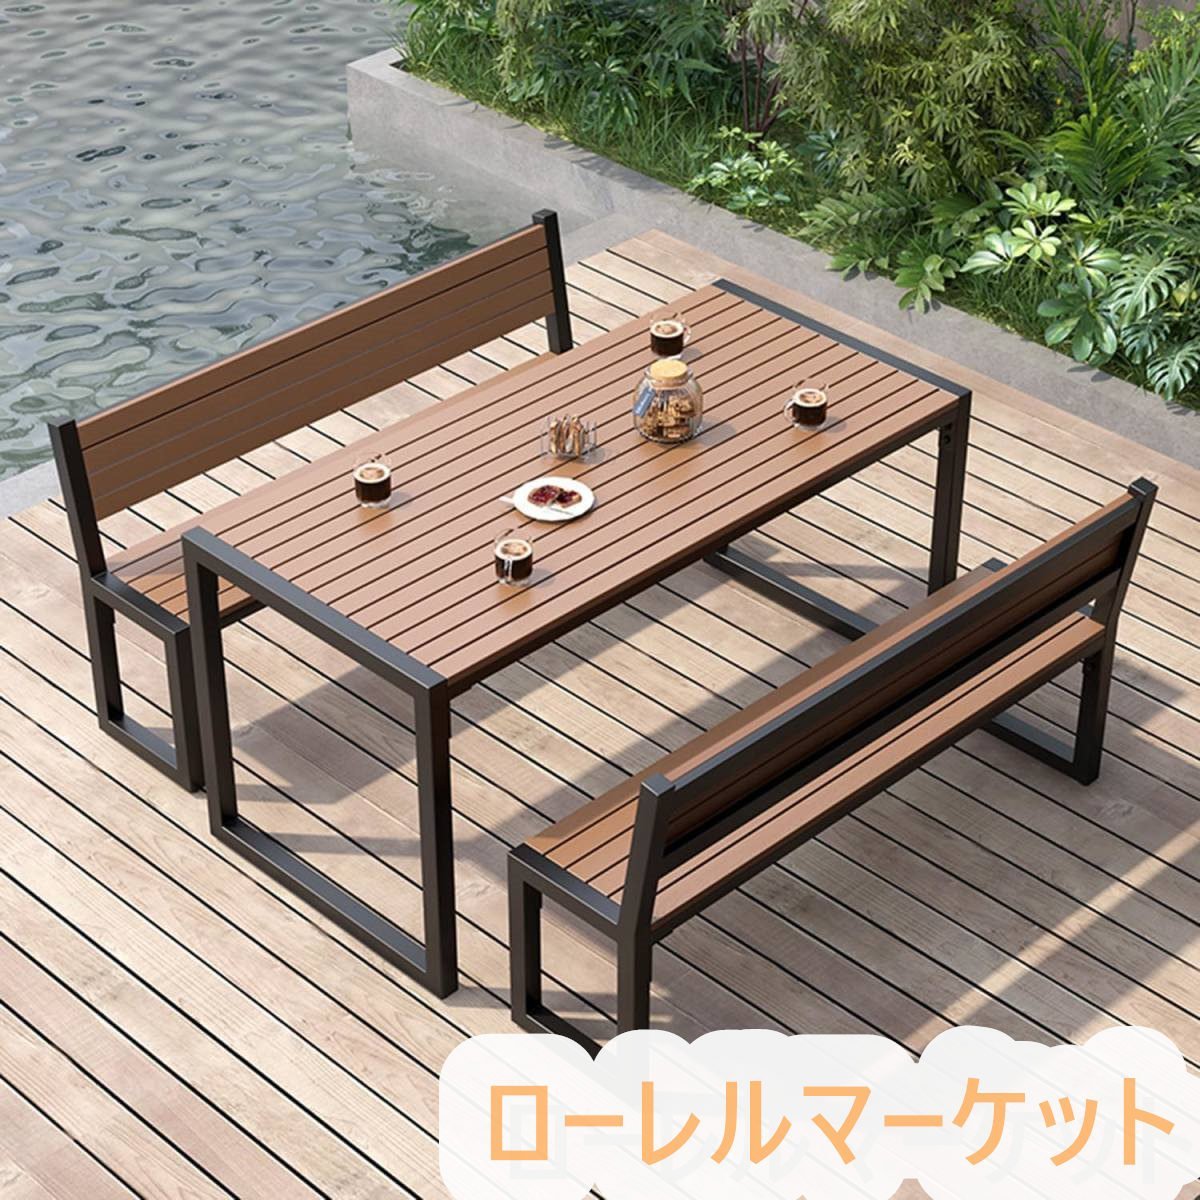 プラスチック製の木製のテーブルトップ 防水性と耐日光性 金属フレーム ガーデンテーブル3点セット 屋外ダイニングテーブルとベンチセット